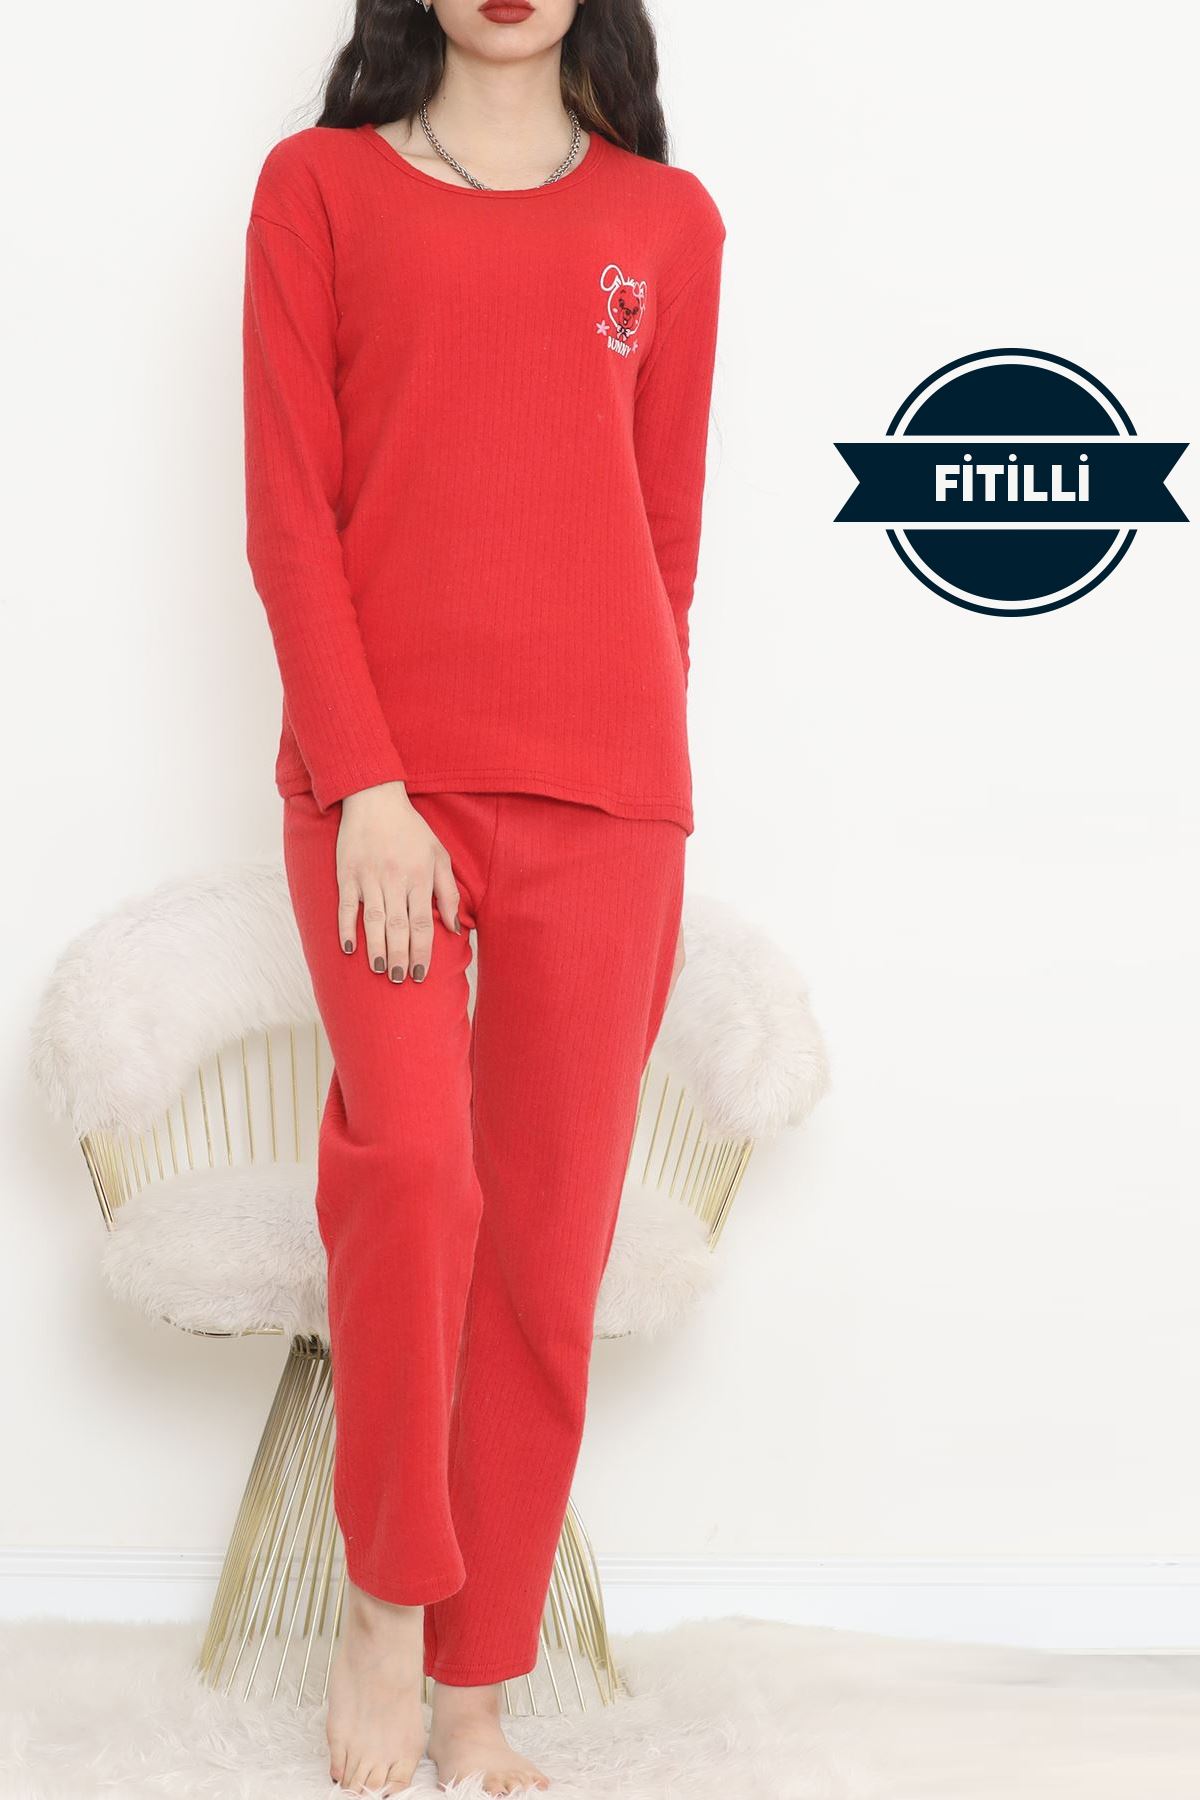 Nakışlı Fitilli Pijama Takımı Kırmızıbeyaz2 - 12519.1048.